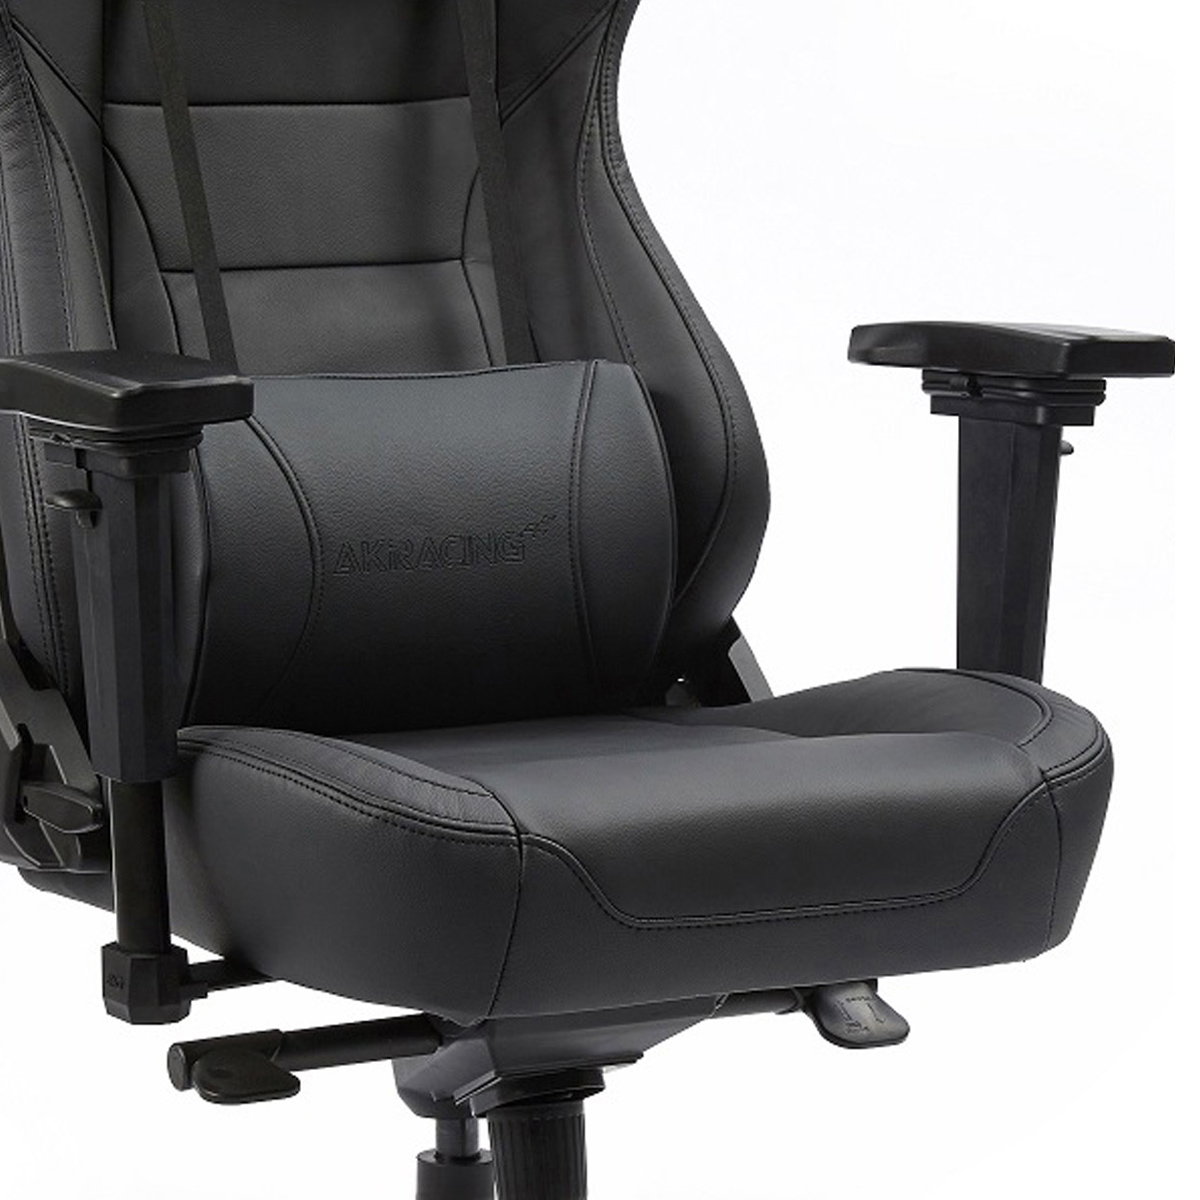 会議椅子 デスクチェア リフレッシュチェア 布張り 肘無 固定脚タイプ NO-1320-1 オフィスチェア